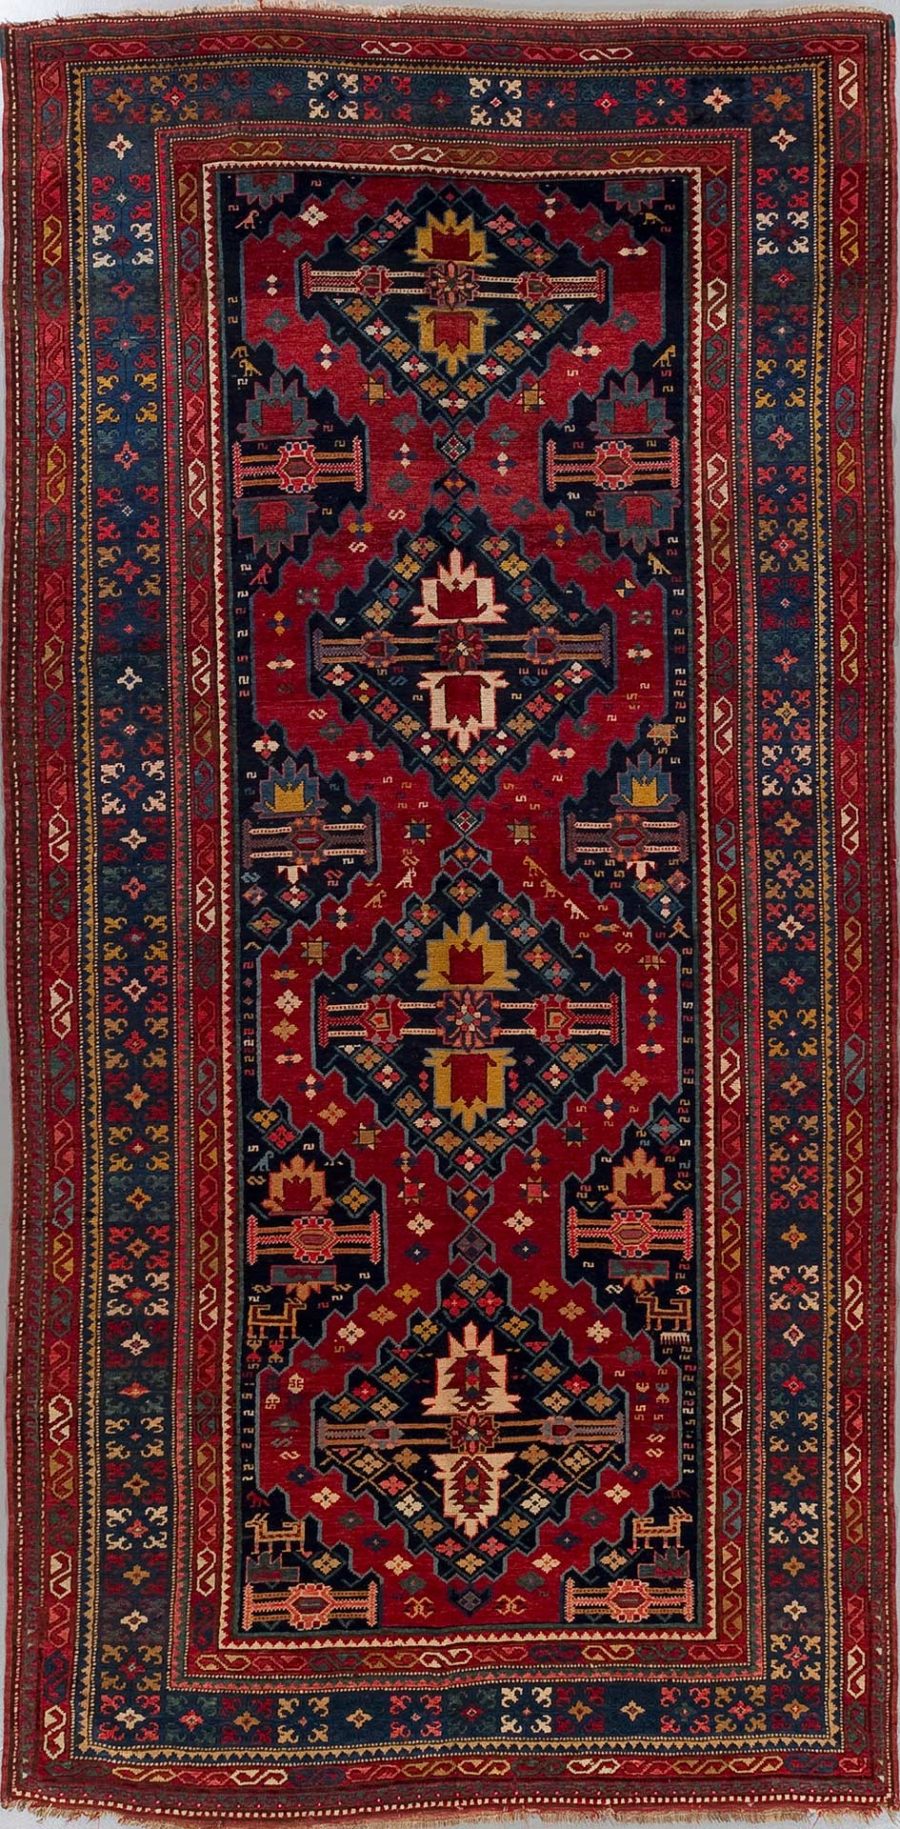 Antiker handgeknüpfter orientalischer Teppich mit komplexen geometrischen Mustern und Medaillon-Design in Rot-, Blau- und Goldtönen.